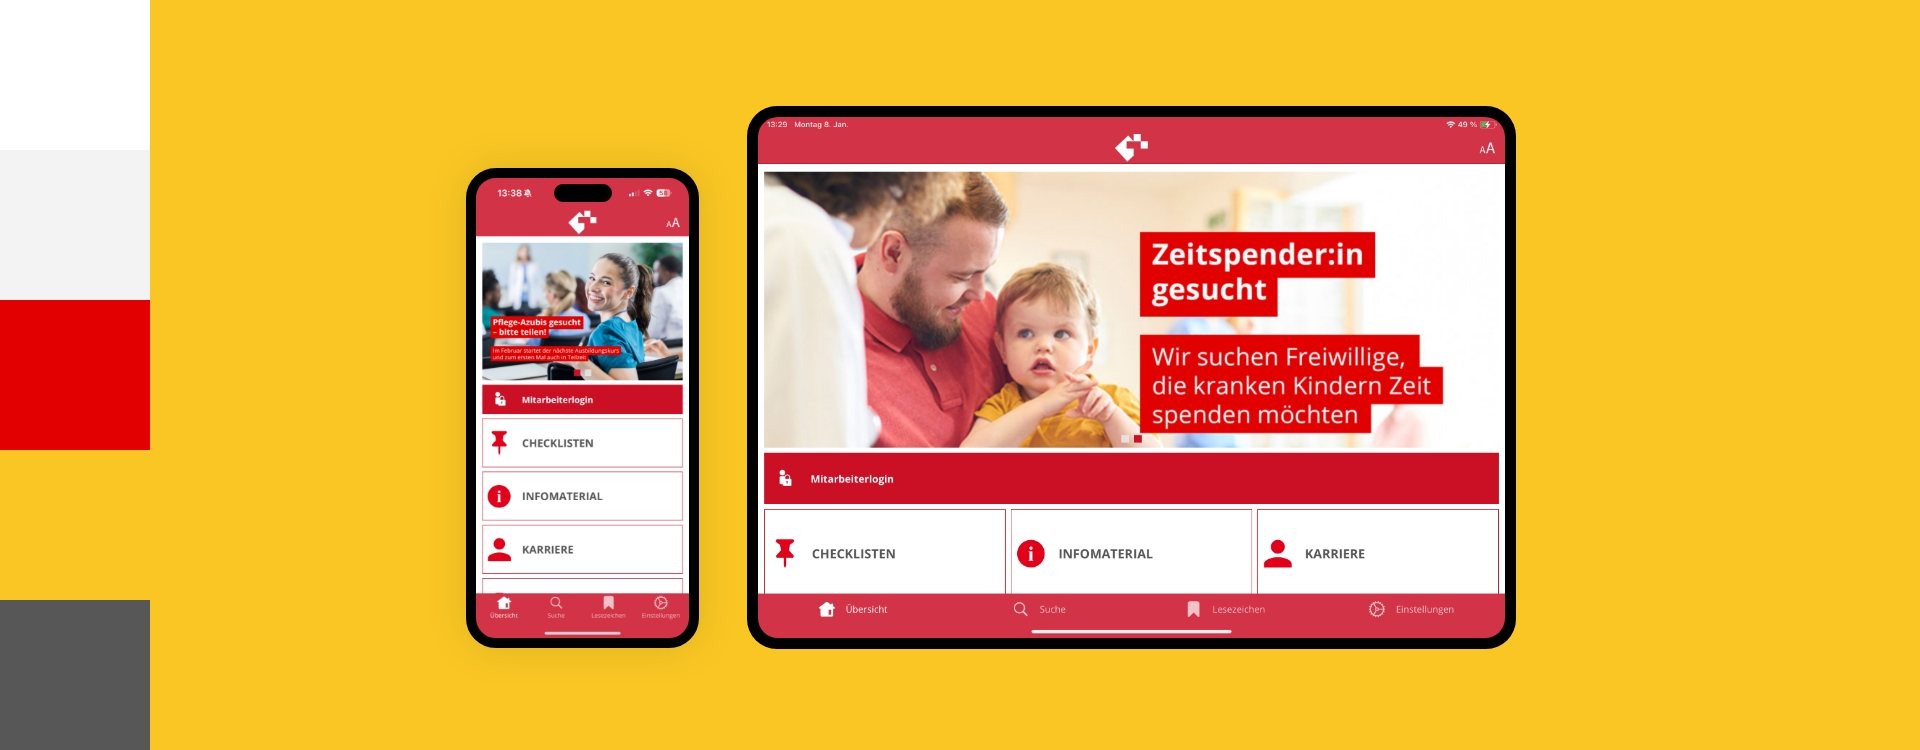 Screenshot einer Smartphone- und Tabletansicht der App des Krankenhaus Wilhelmstift umgeben von den Farben des Corporate Design